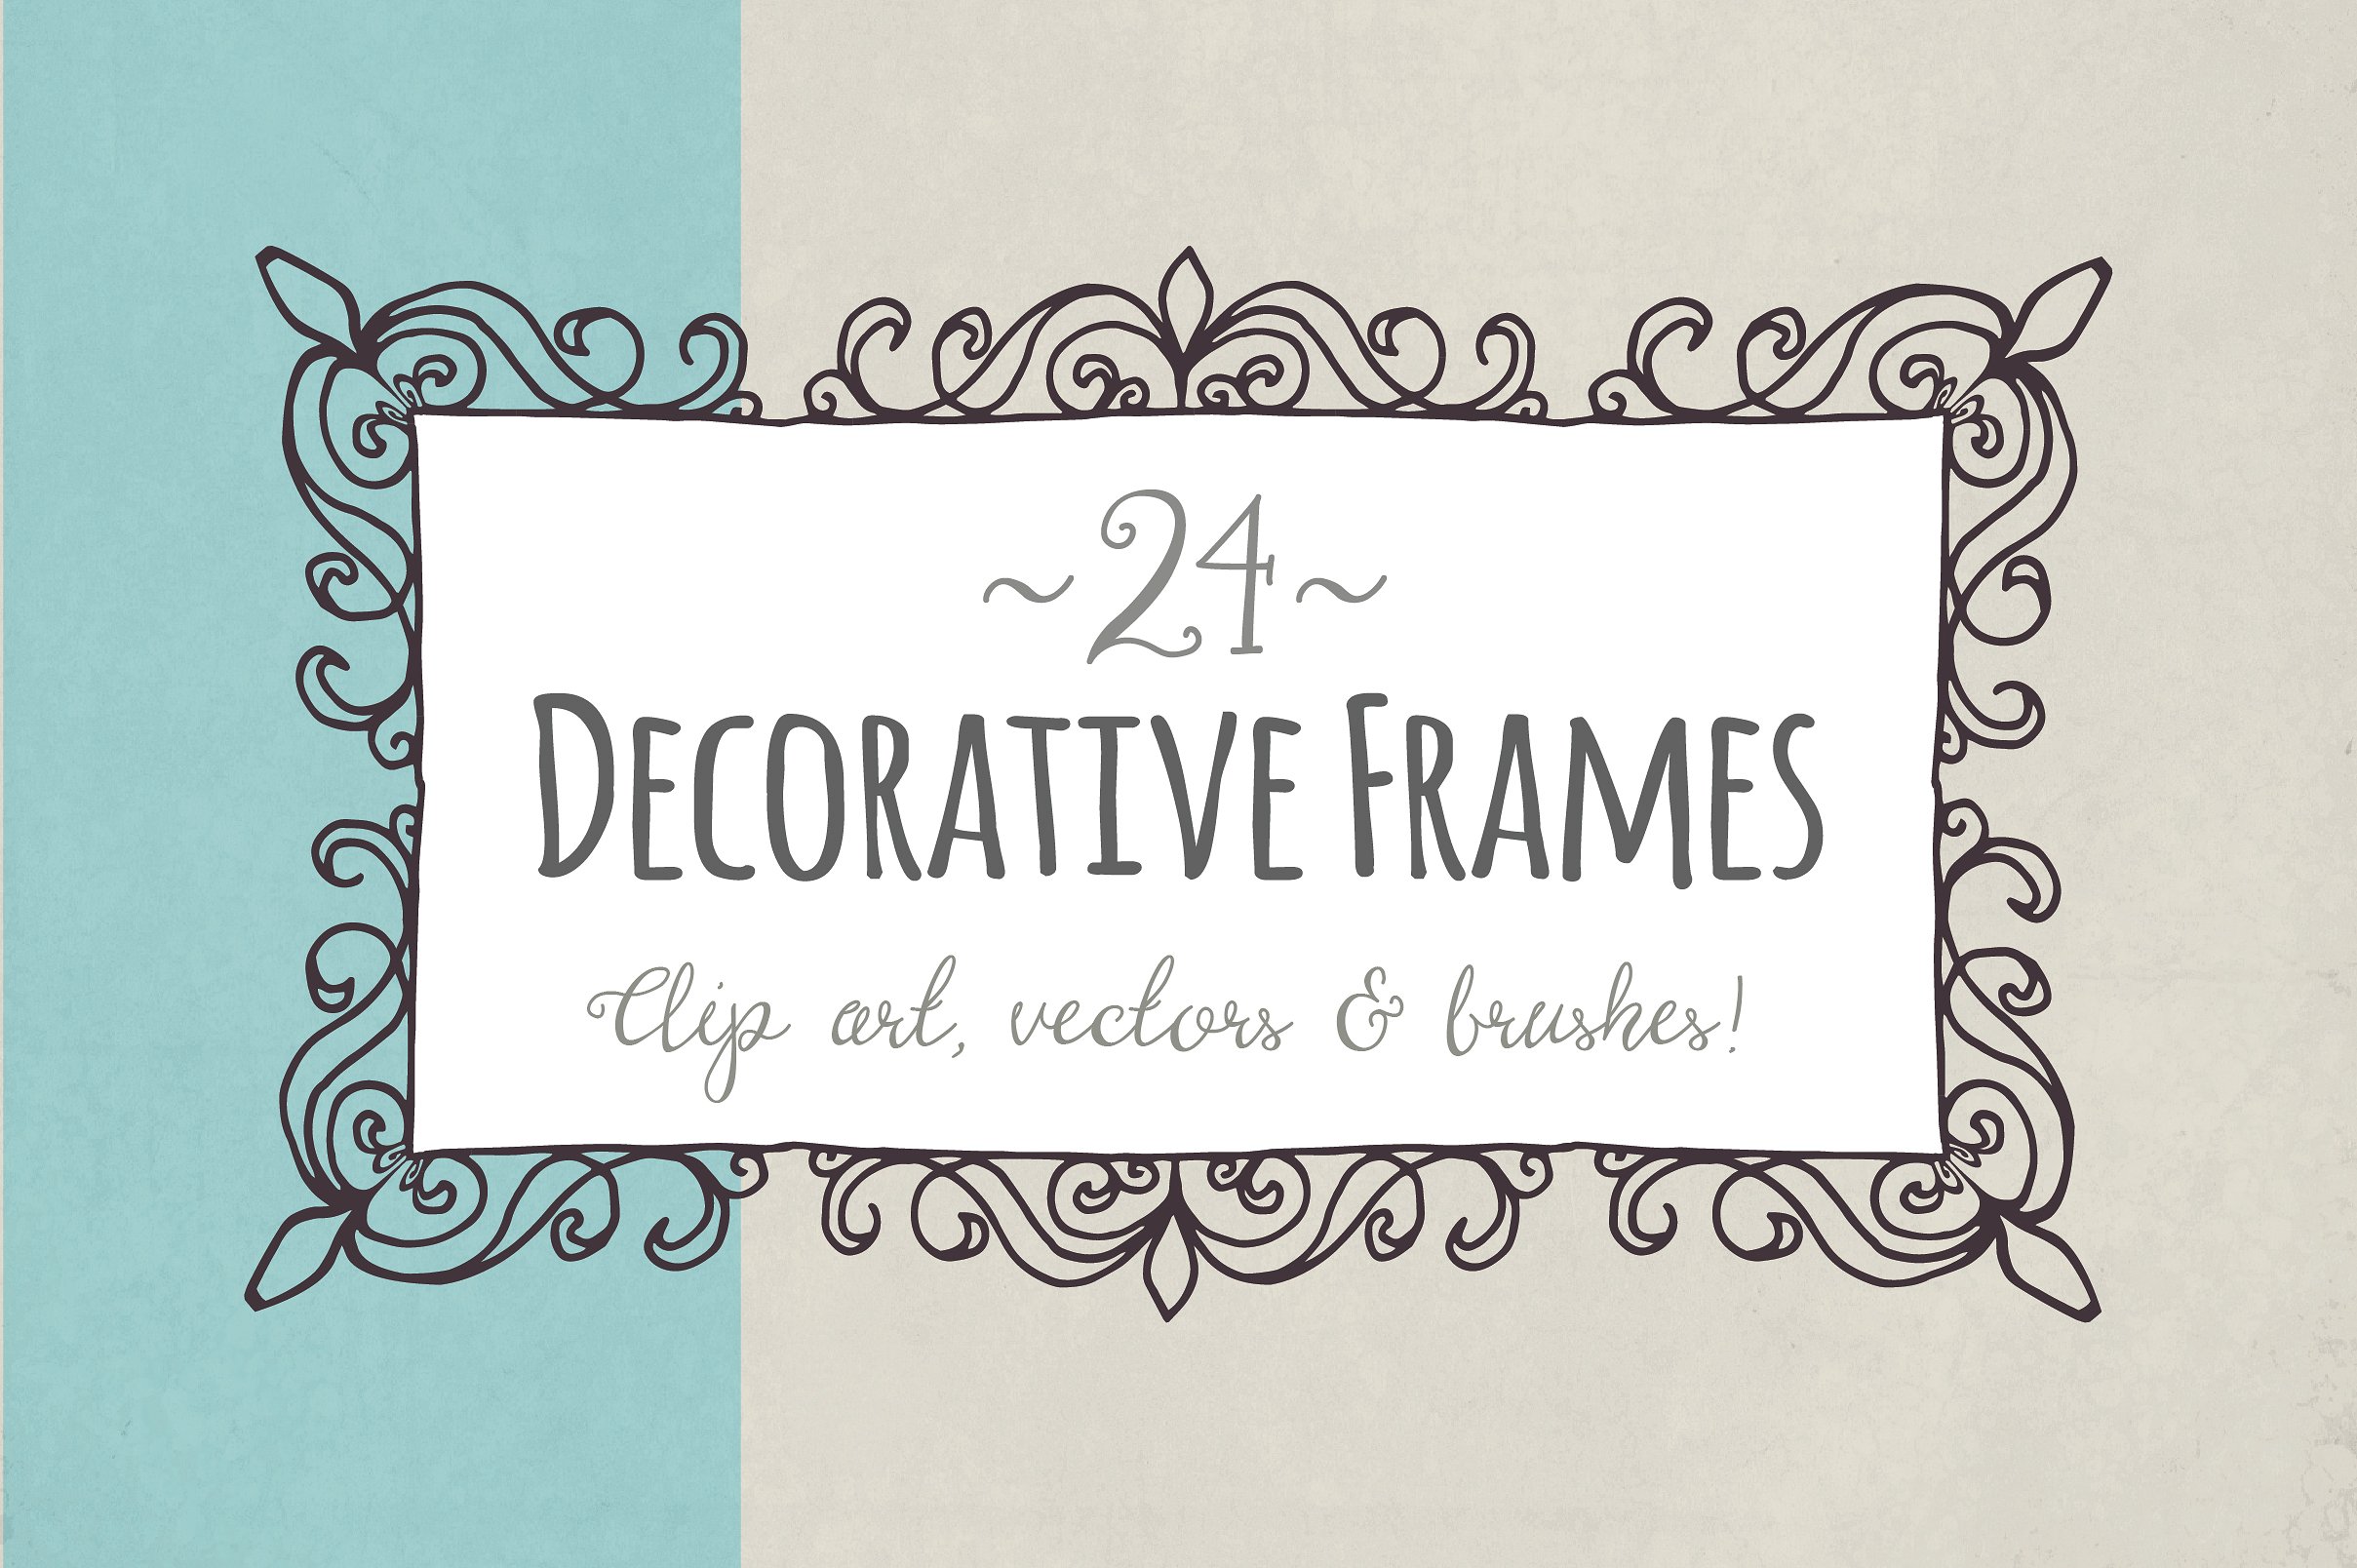 手绘花纹边框设计素材Decorative Frames -